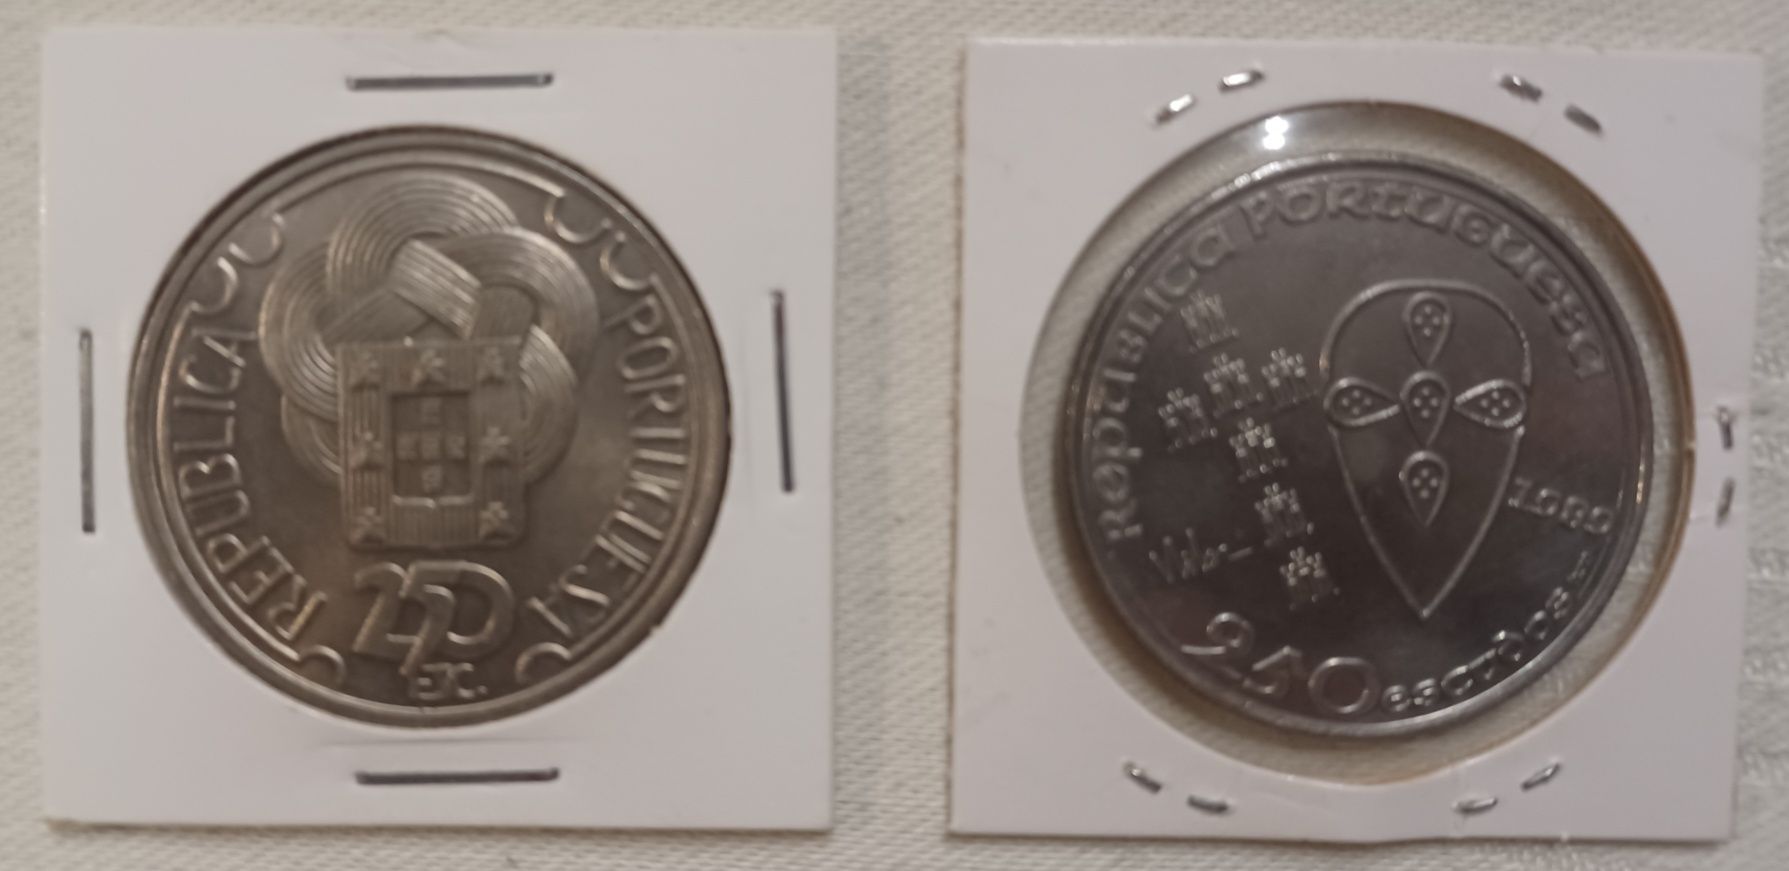 Moedas Portugal  - 250, 500 escudos - Numismática